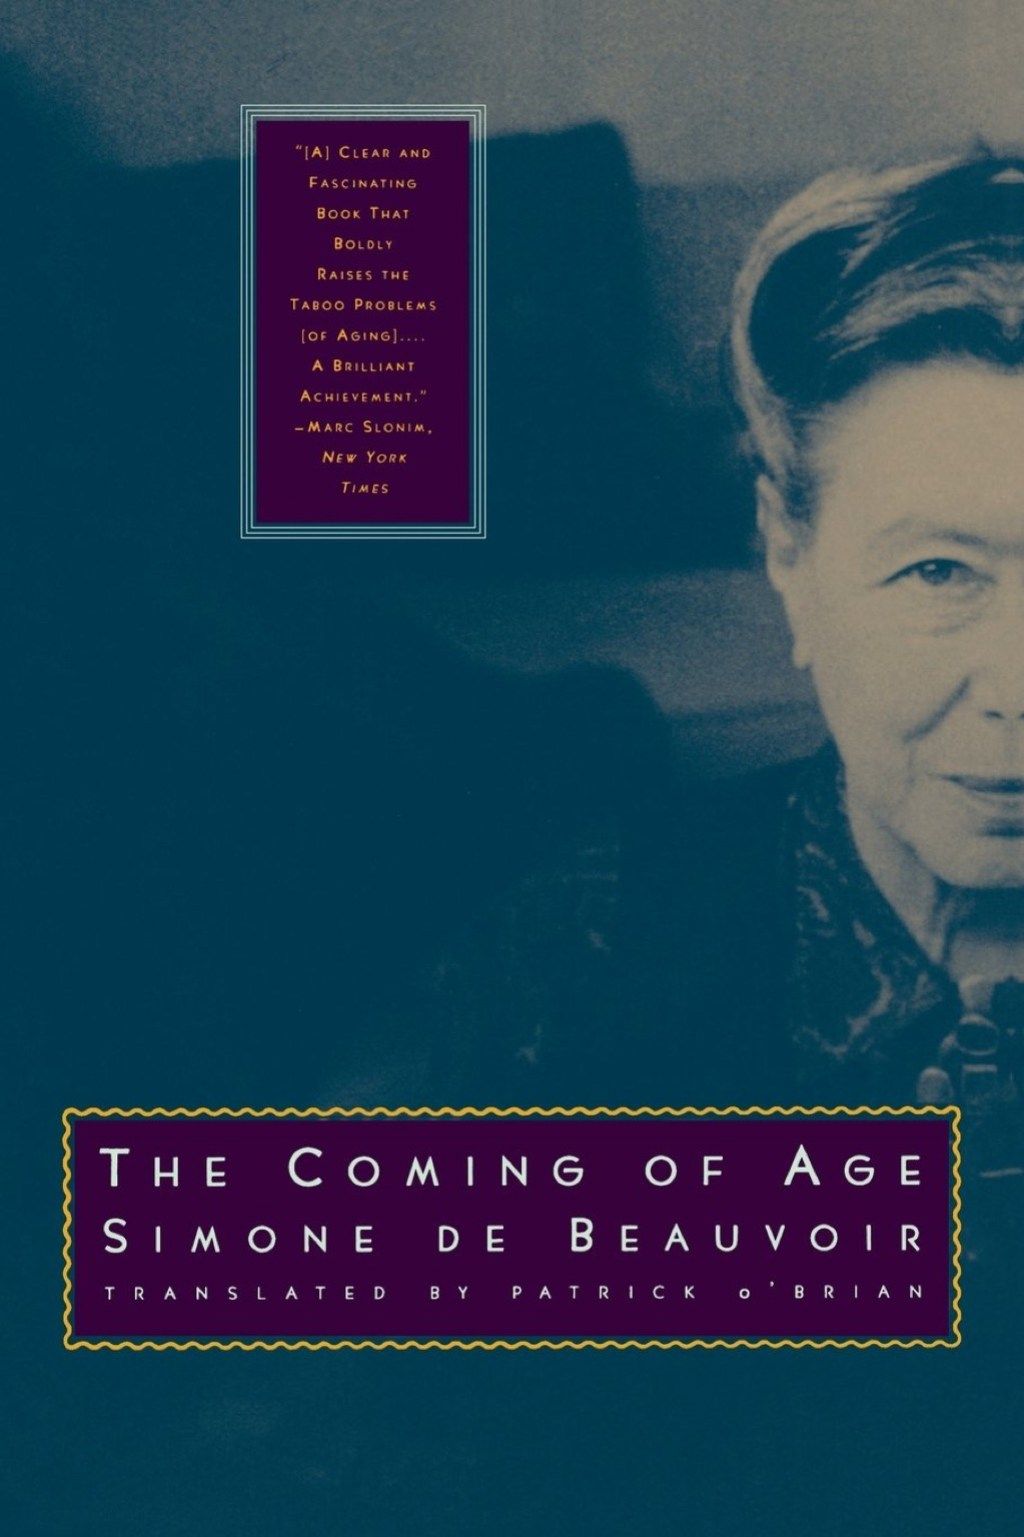 La mayoría de edad de Simone de Beauvoir